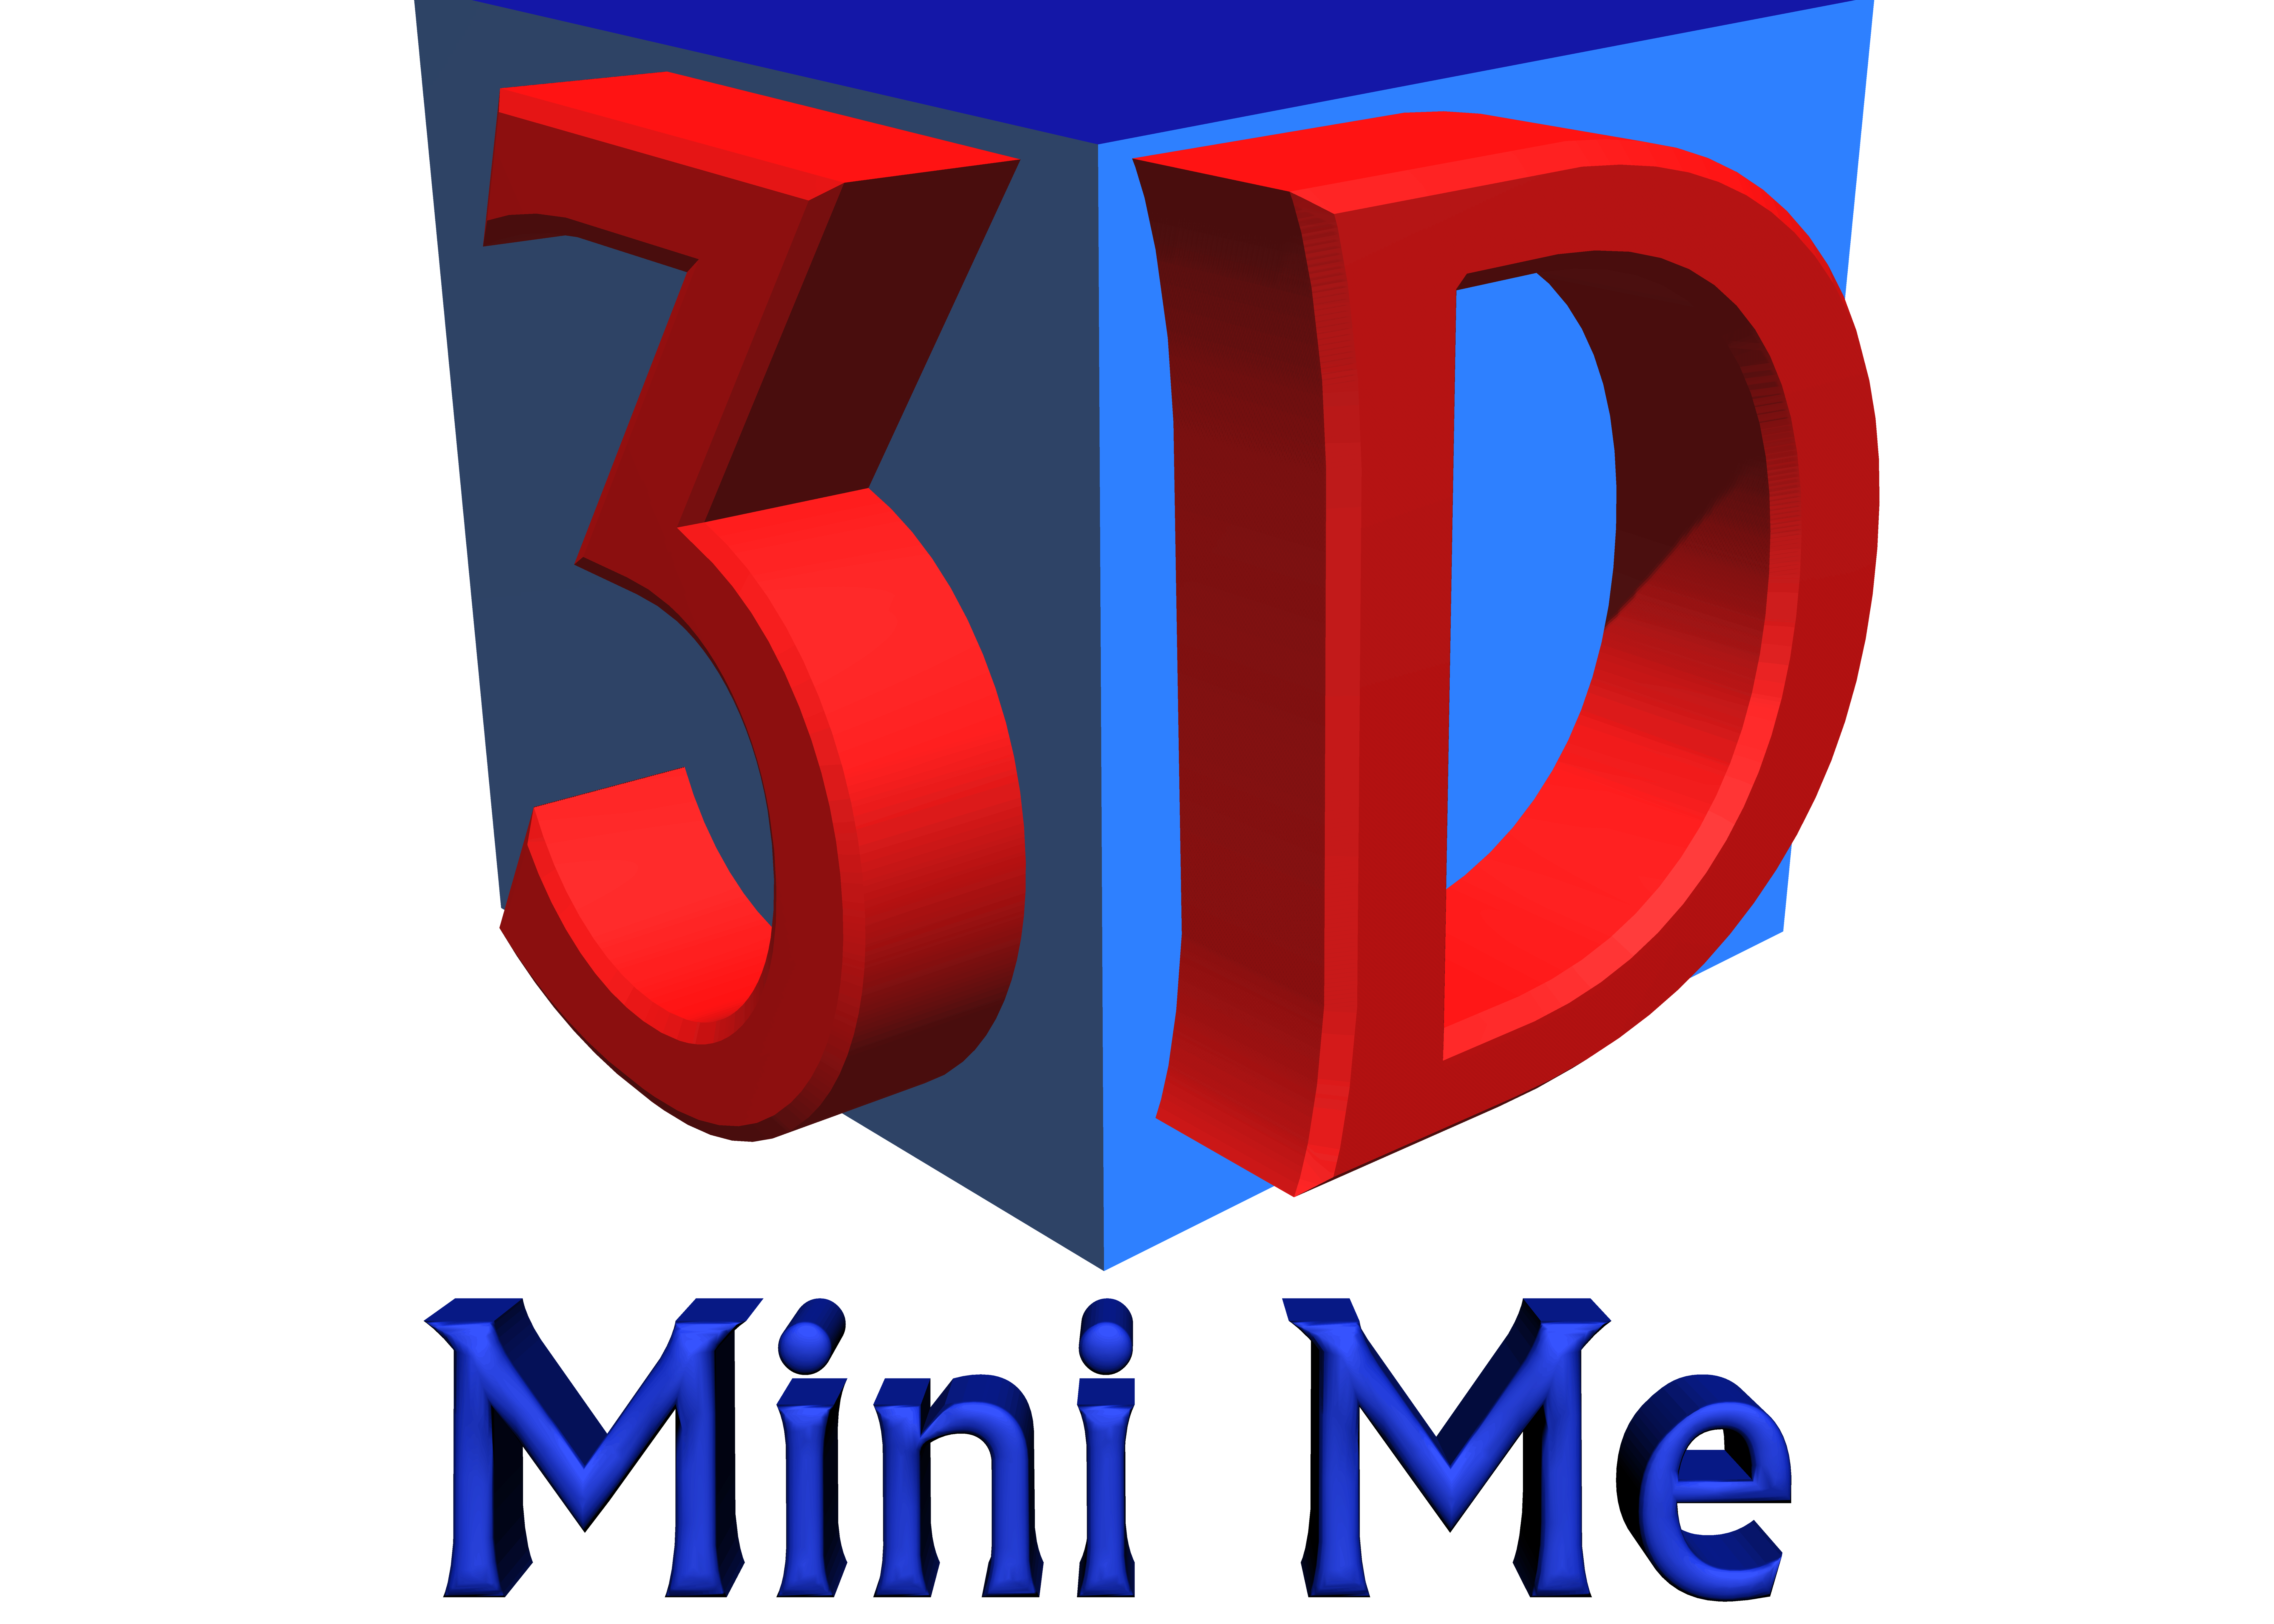 3d Mini Me Key West